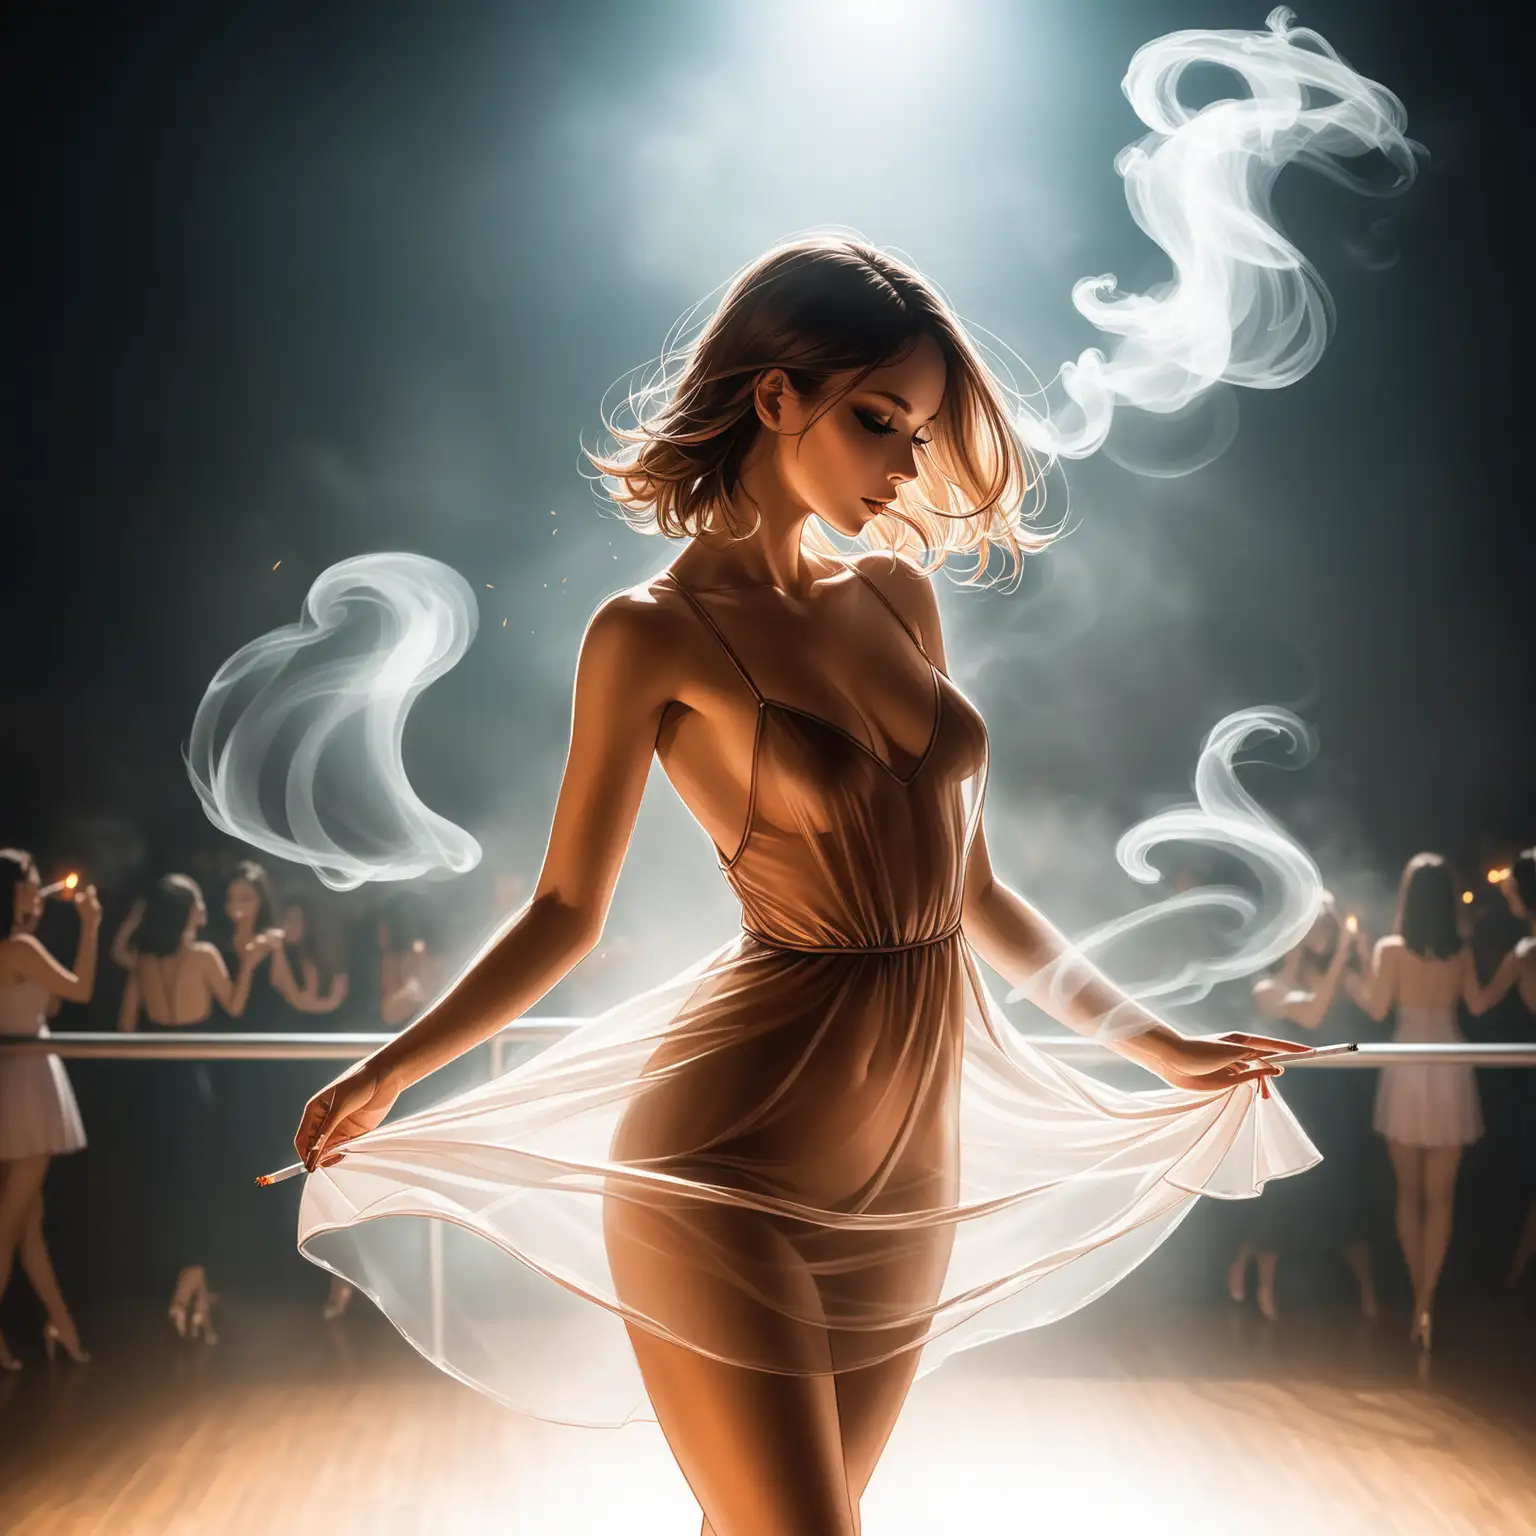 Ethereal Dancing Graceful Girl Enveloped in Translucent Cigarette Smoke Dress